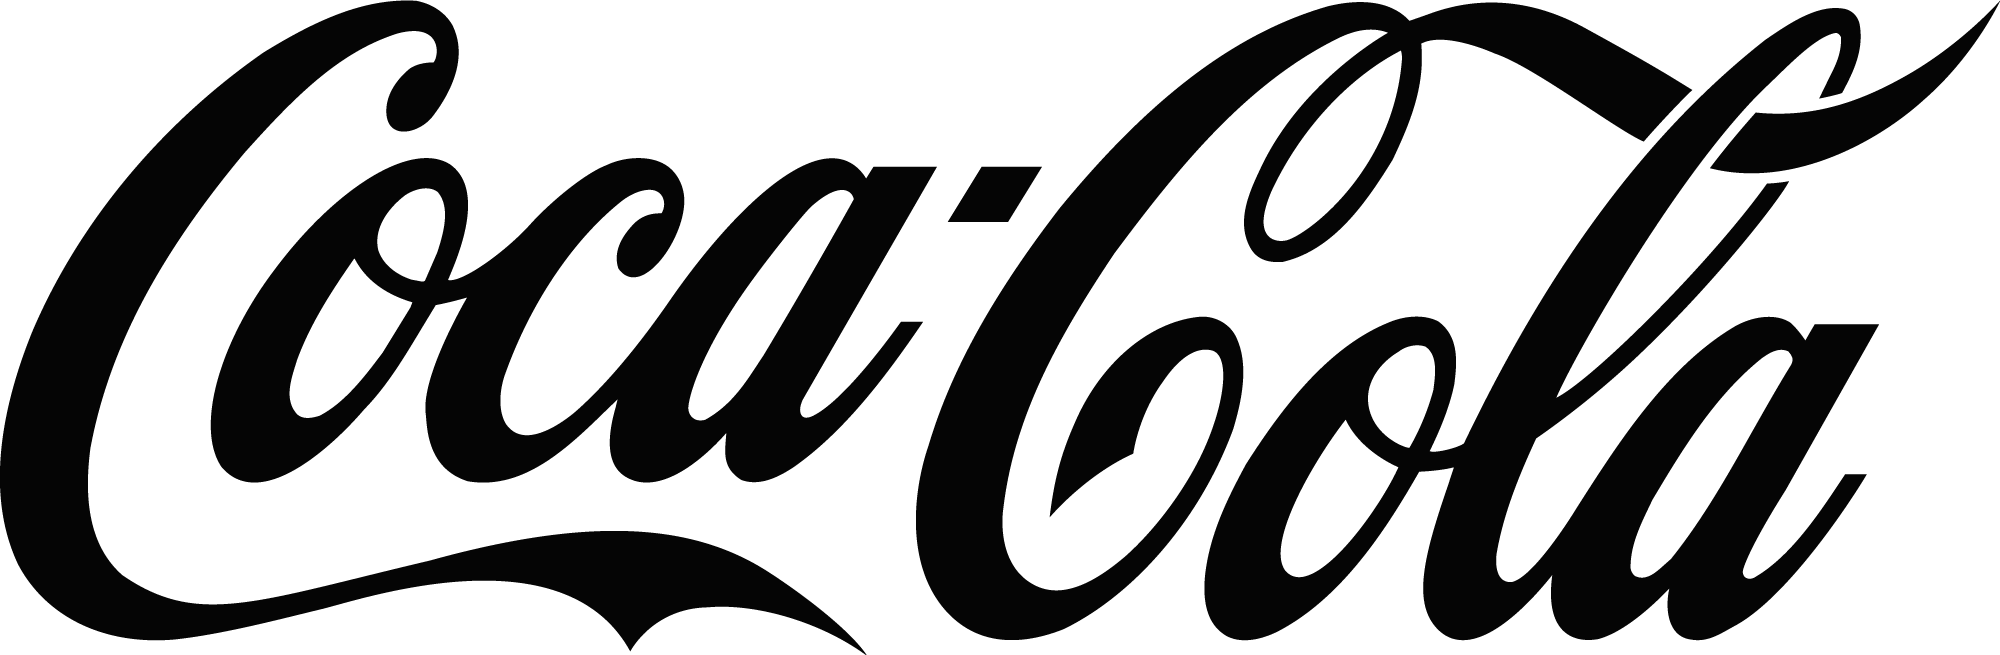 coca cola logo black